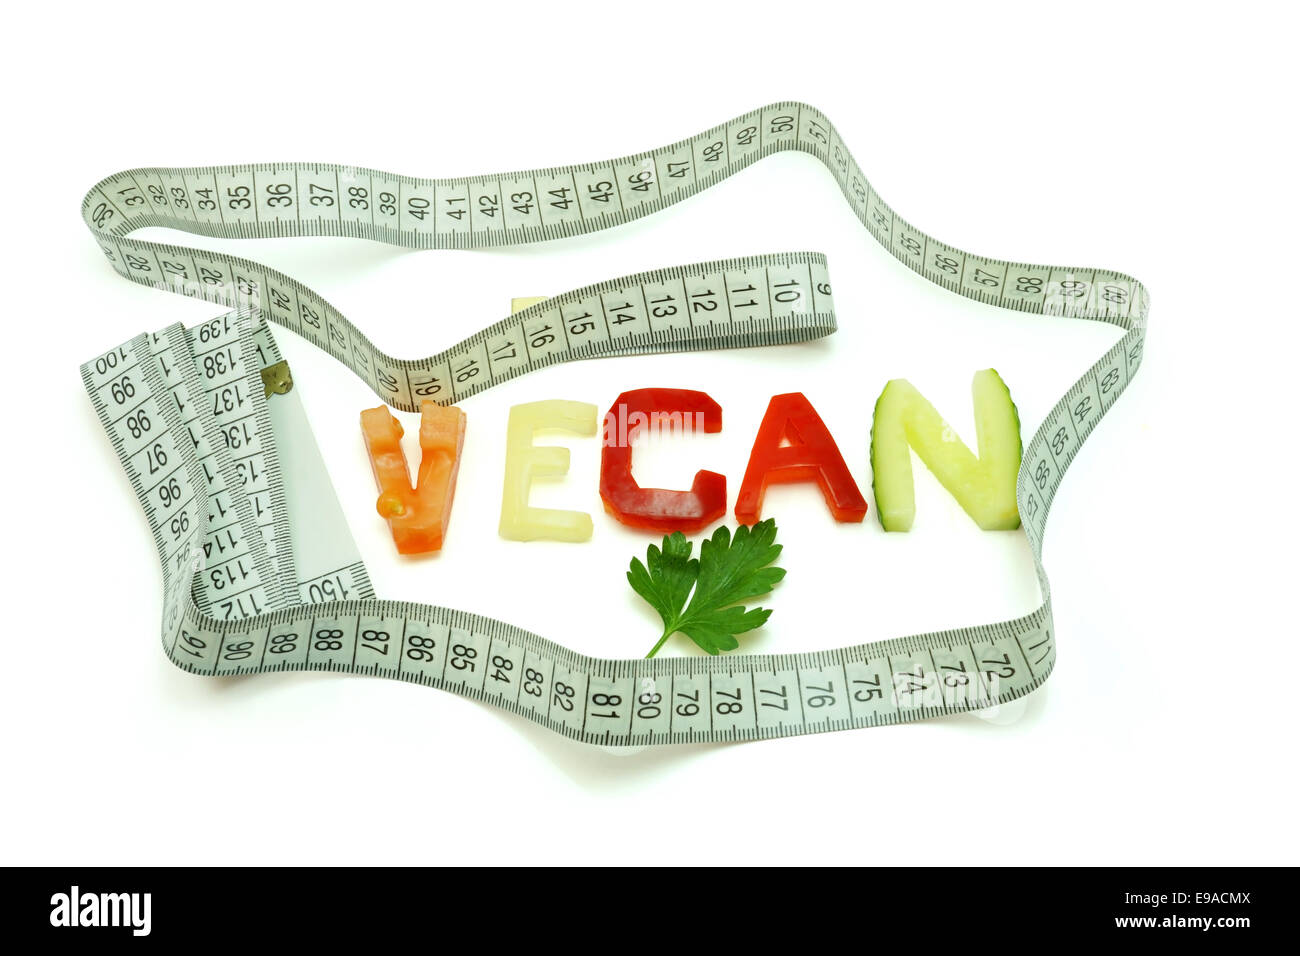 Palabra vegan compuesto de trozos de verdura diferente con cinta métrica sobre un fondo blanco. Dieta Vegana Foto de stock